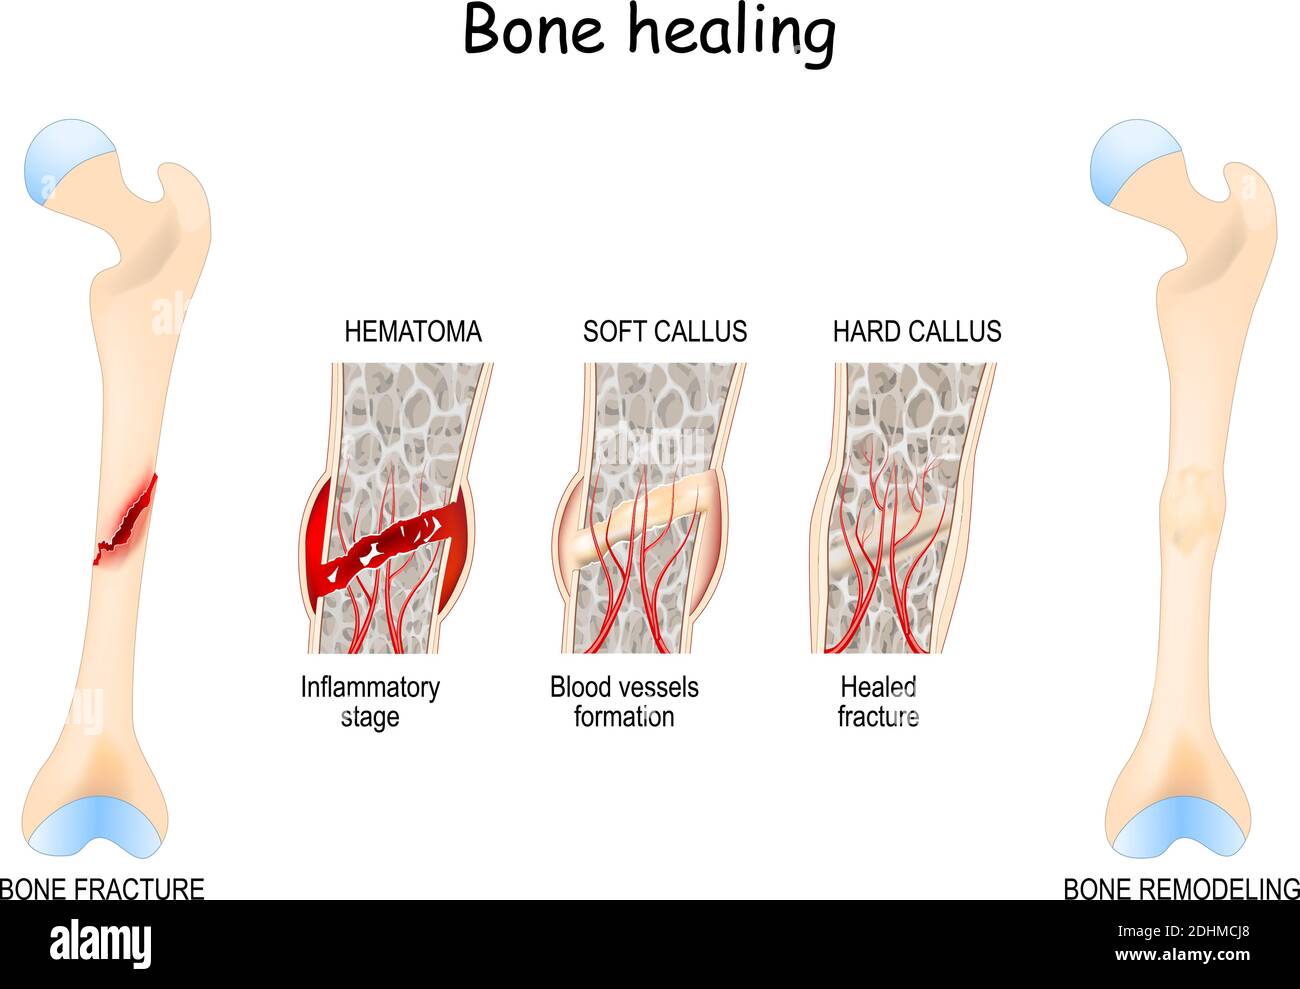 Processus de guérison osseuse après une fracture osseuse. Étapes de guérison osseuse. Diagramme vectoriel Illustration de Vecteur